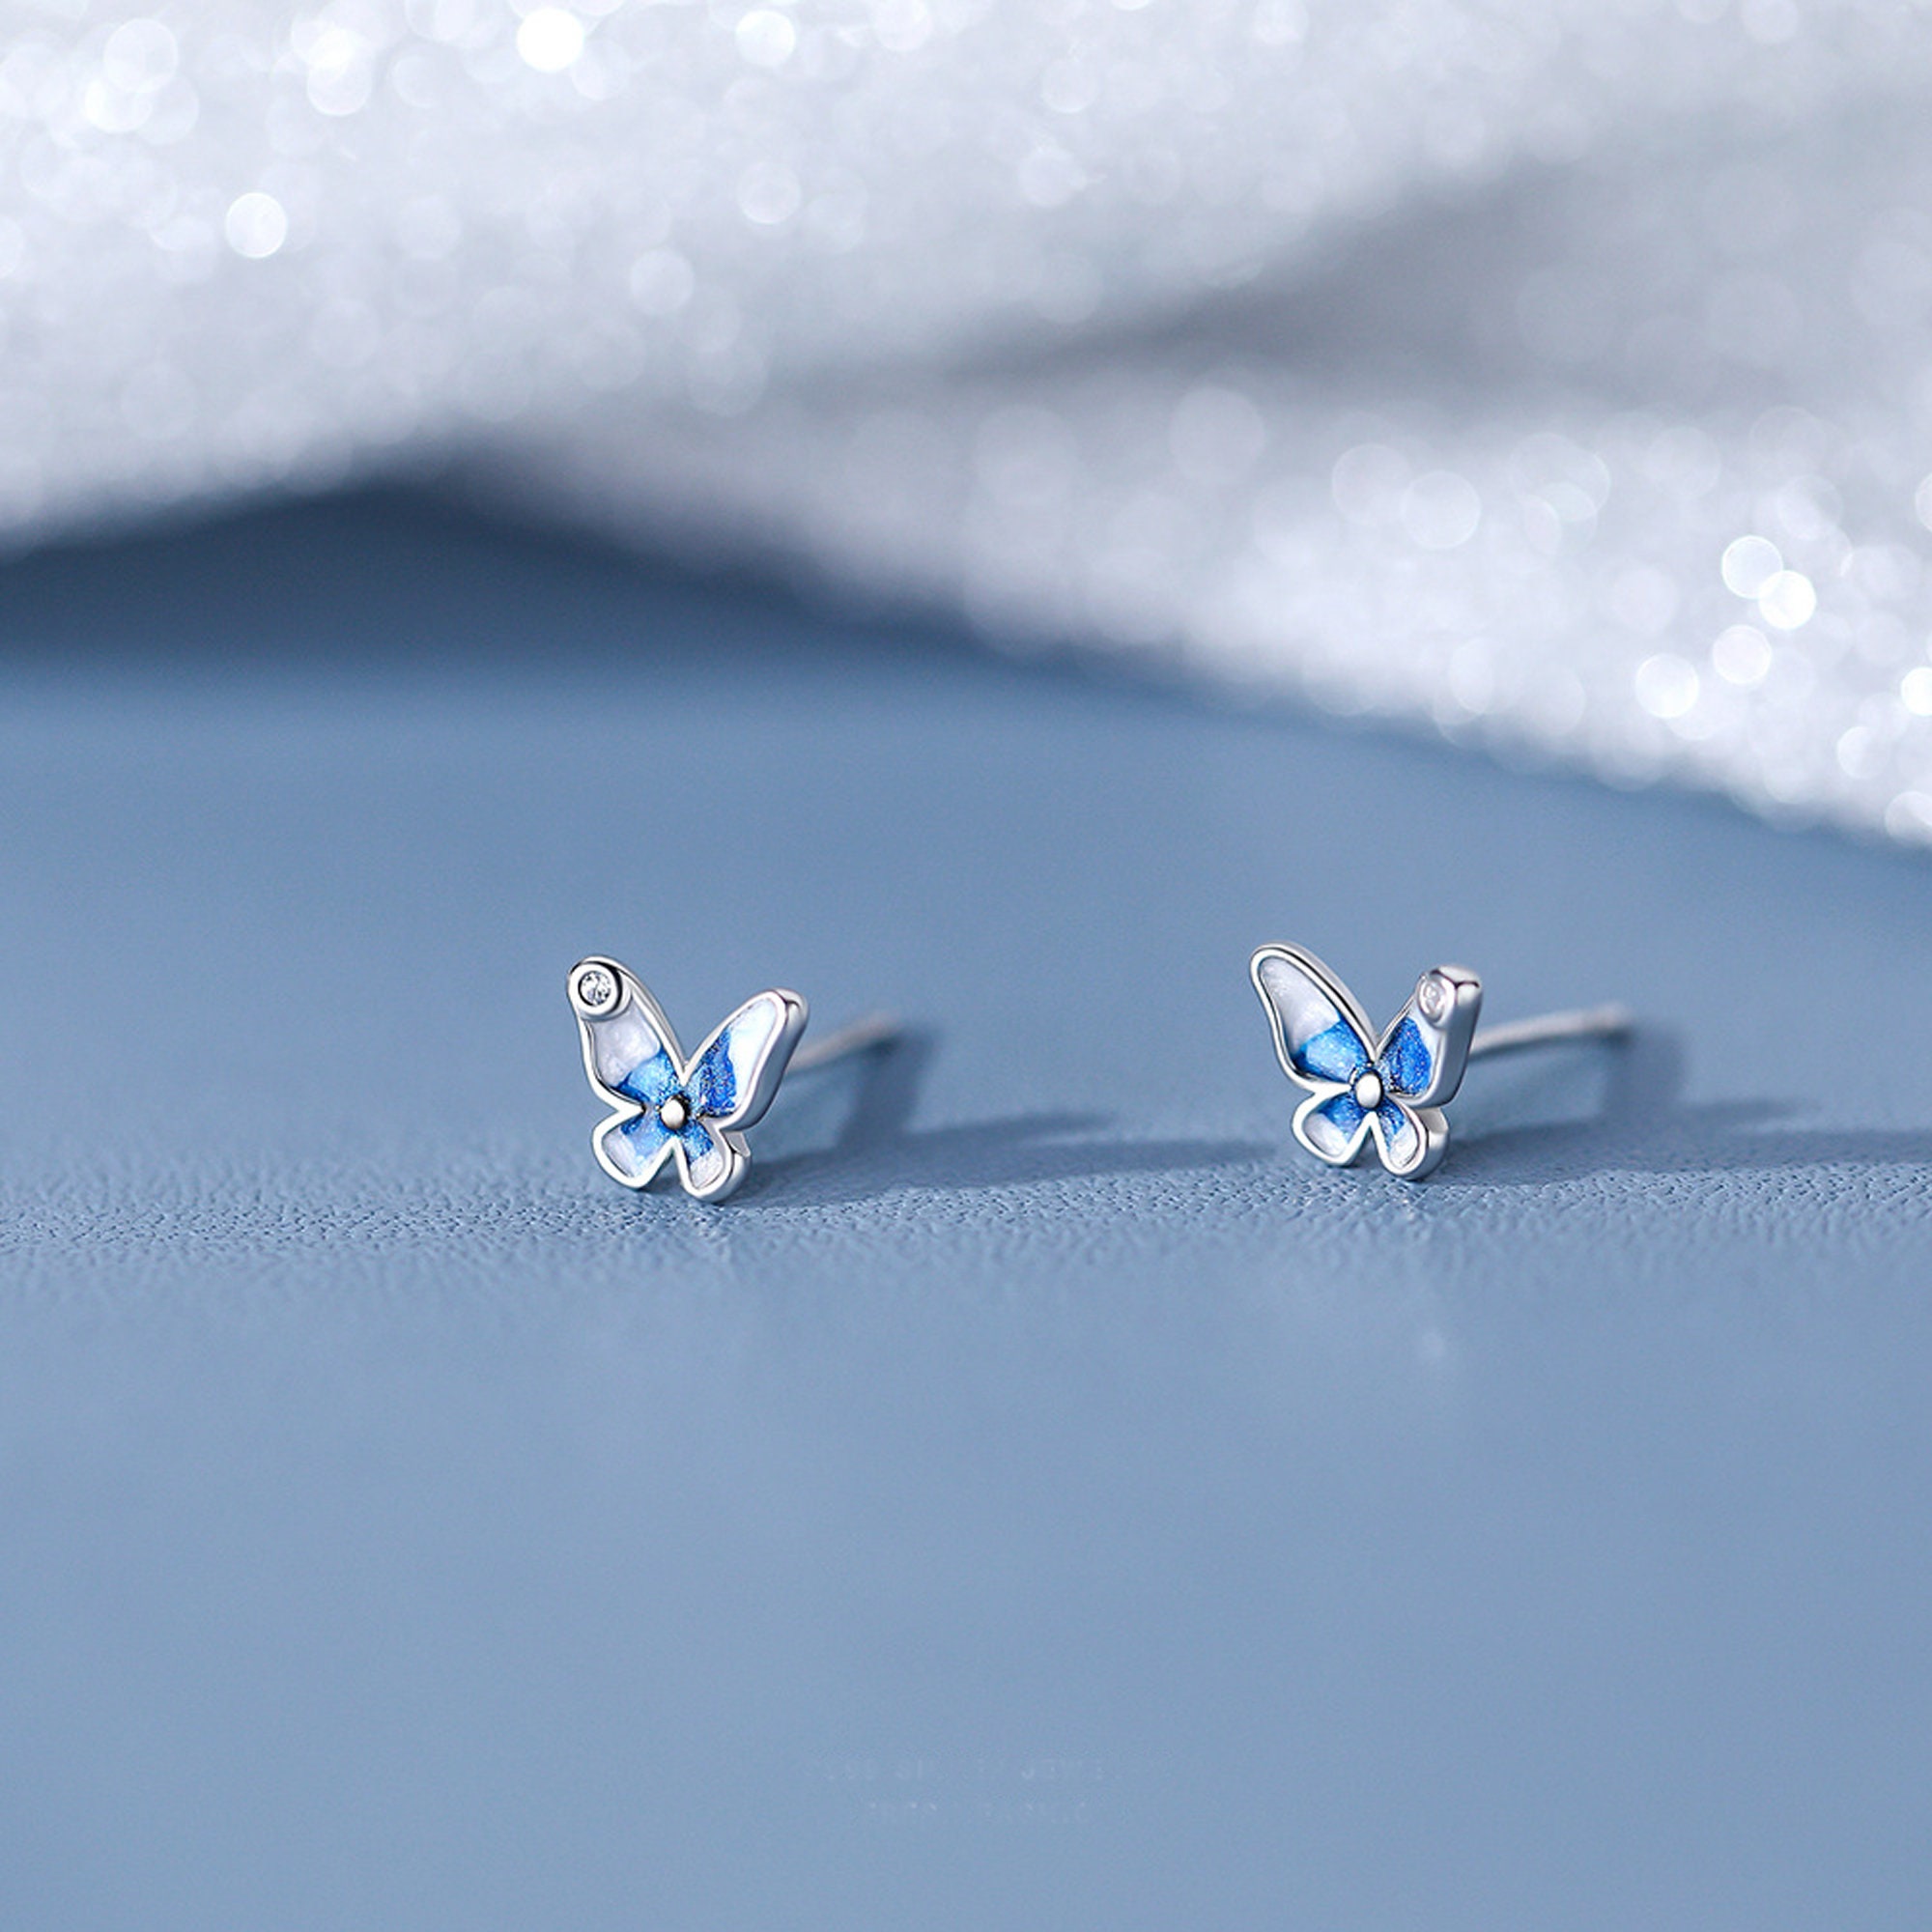 Butterfly Loves|925 Sterling Silver Butterfly Stud Earrings -  Hypoallergenic Fine Jewelry For Women